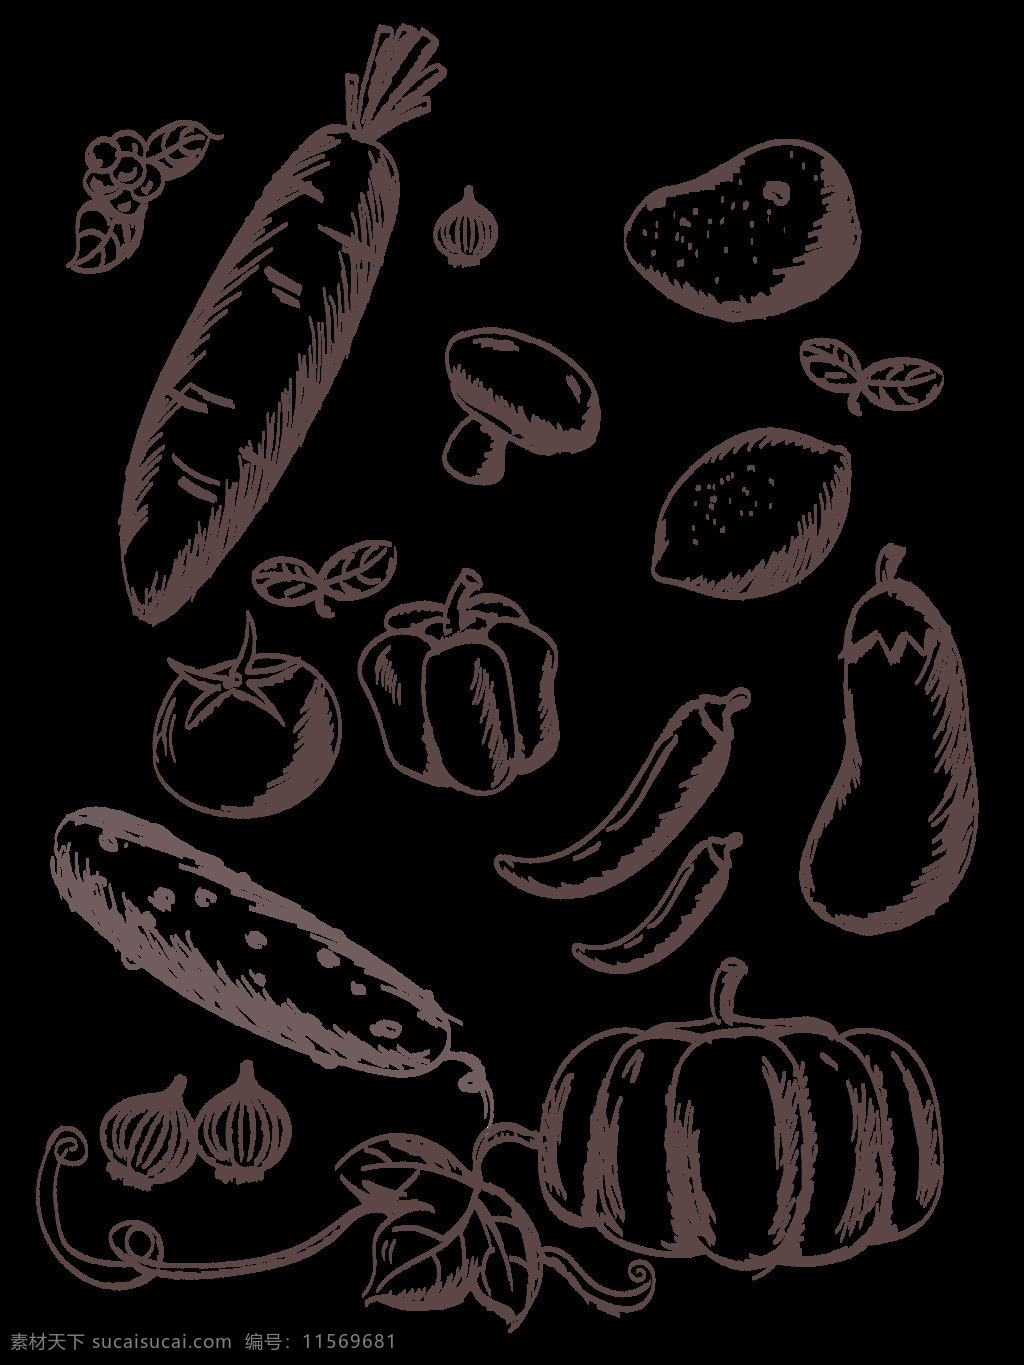 手绘 简约 素描 线条 蔬菜水果 商用 矢量 元素 黑白 蔬果 食物 是食材 饮食 海报背景 宣传素材 萝卜 土豆 蘑菇 茄子 辣椒 圆椒 番茄 南瓜 大蒜 叶子